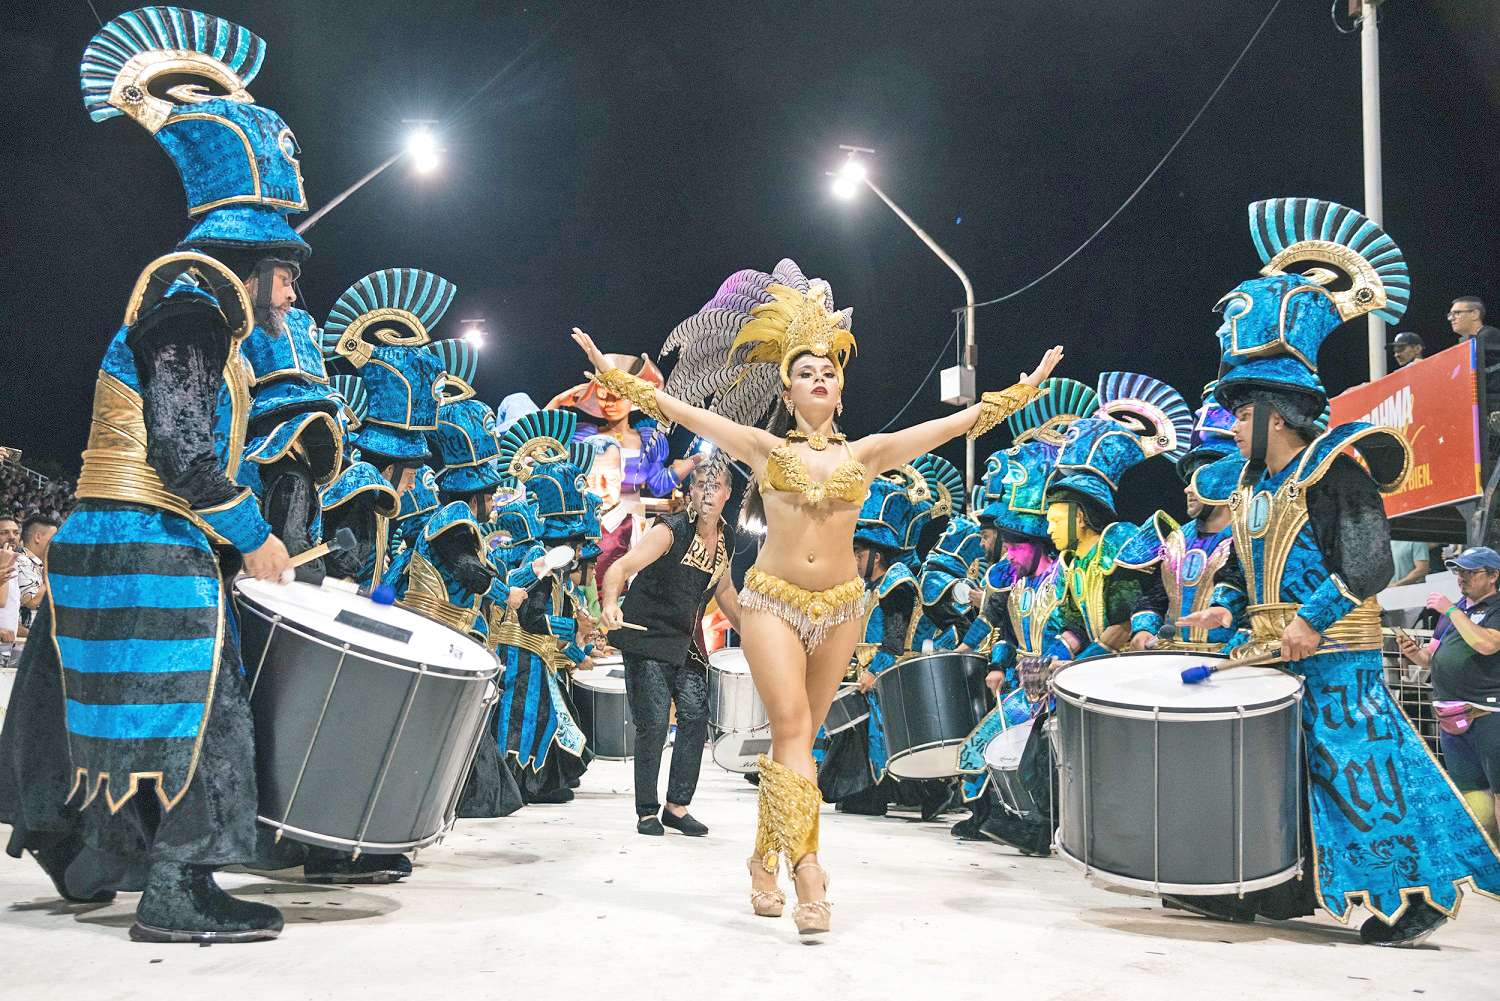 Primera noche del Carnaval: arranca el espectáculo a cielo abierto más grande del país